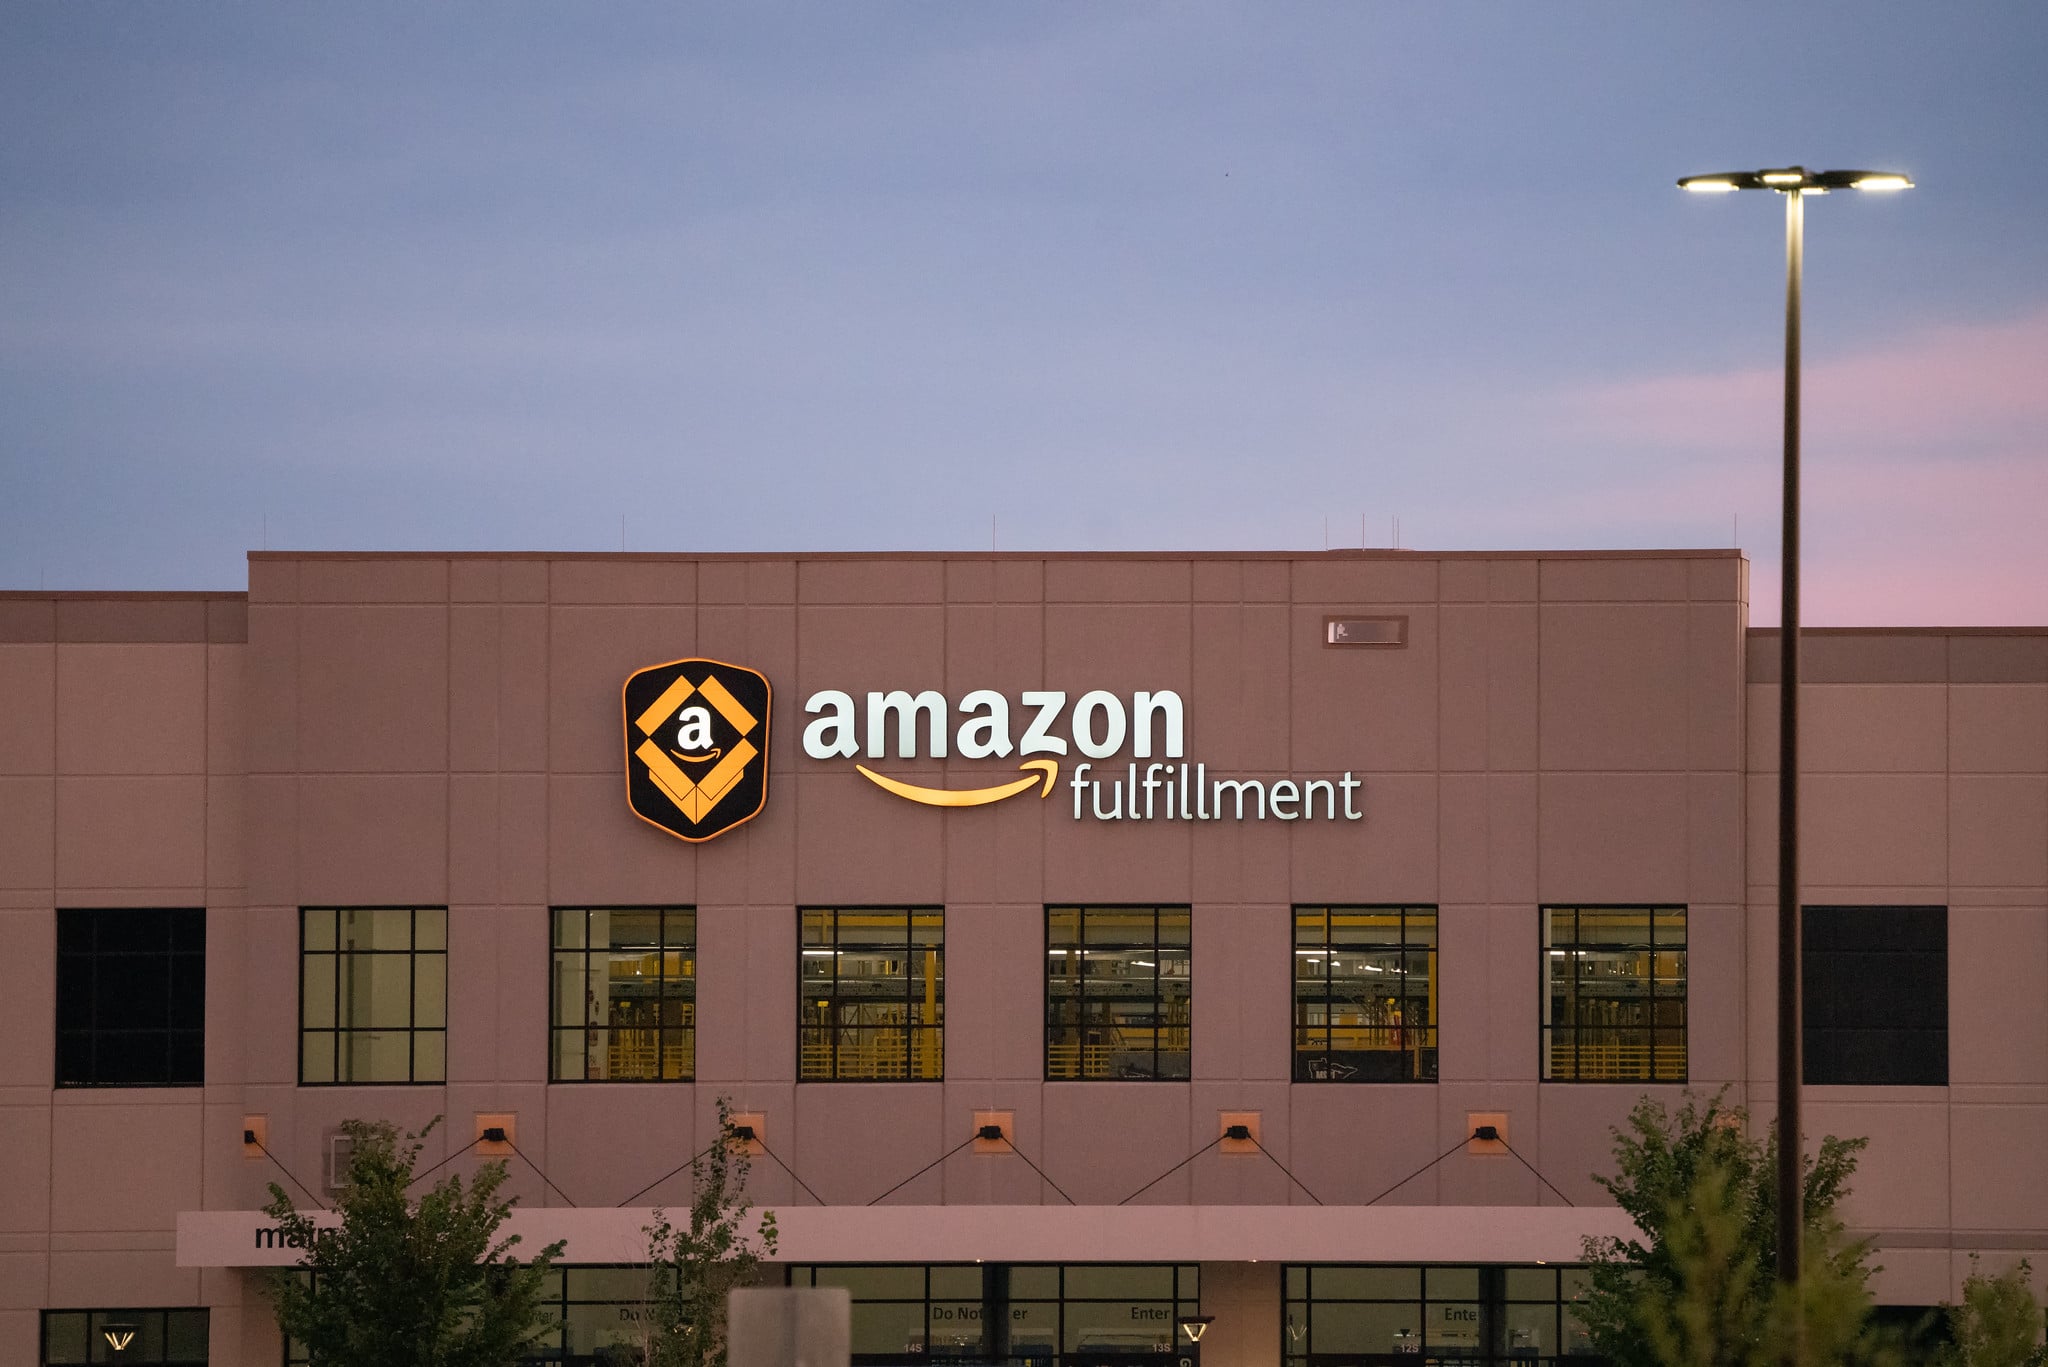 Amazon Fulfillment centre